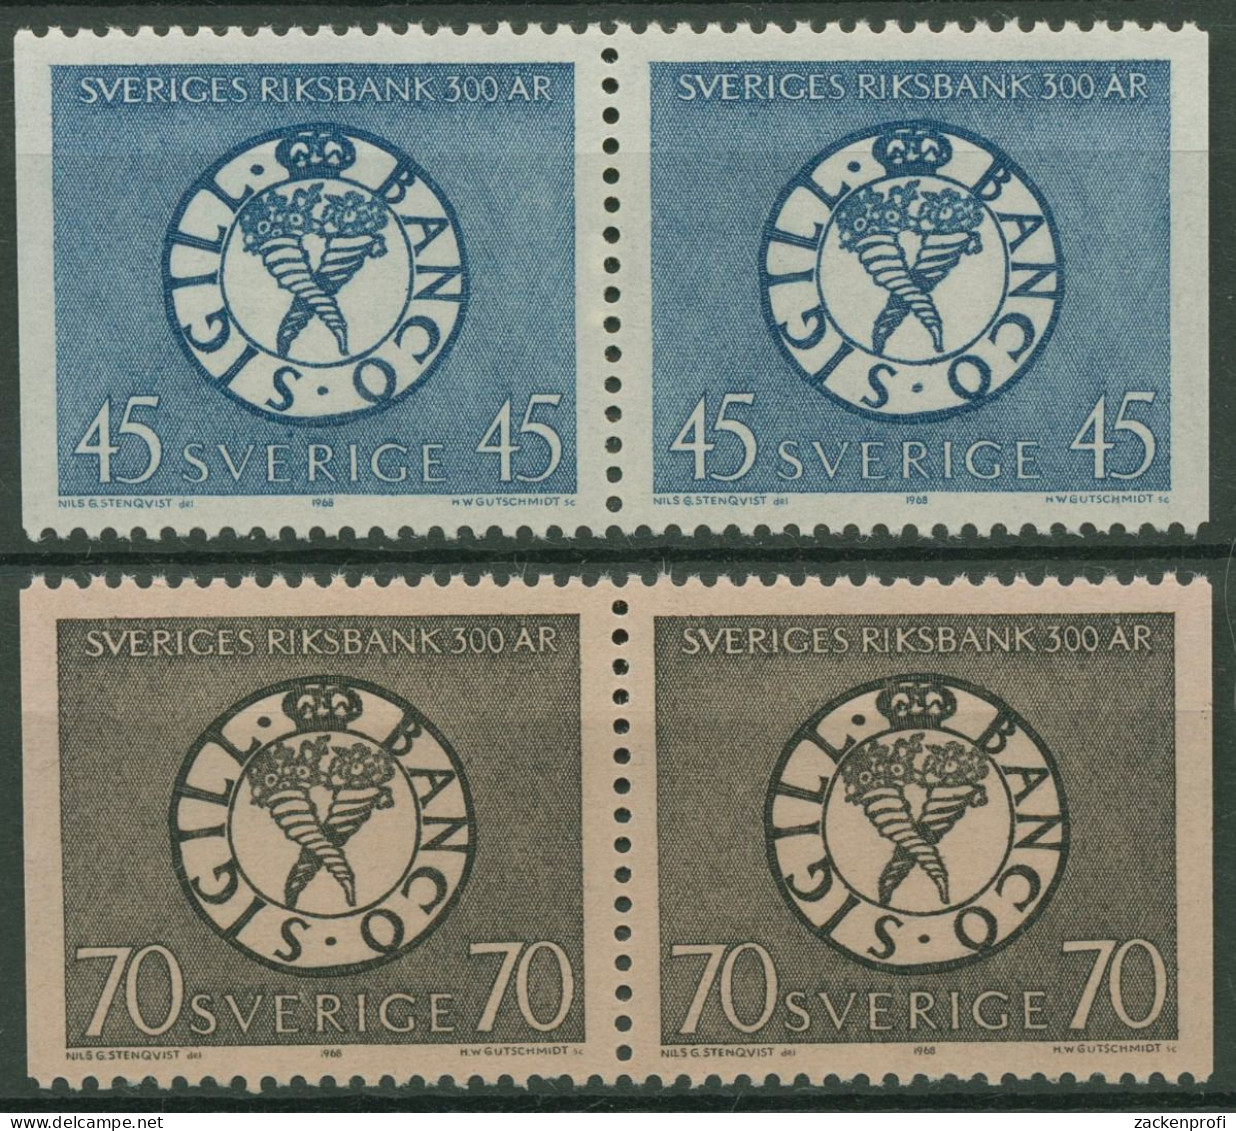 Schweden 1968 Schwedische Reichsbank Siegel 603/04 Dl/Dr Paare Postfrisch - Ungebraucht